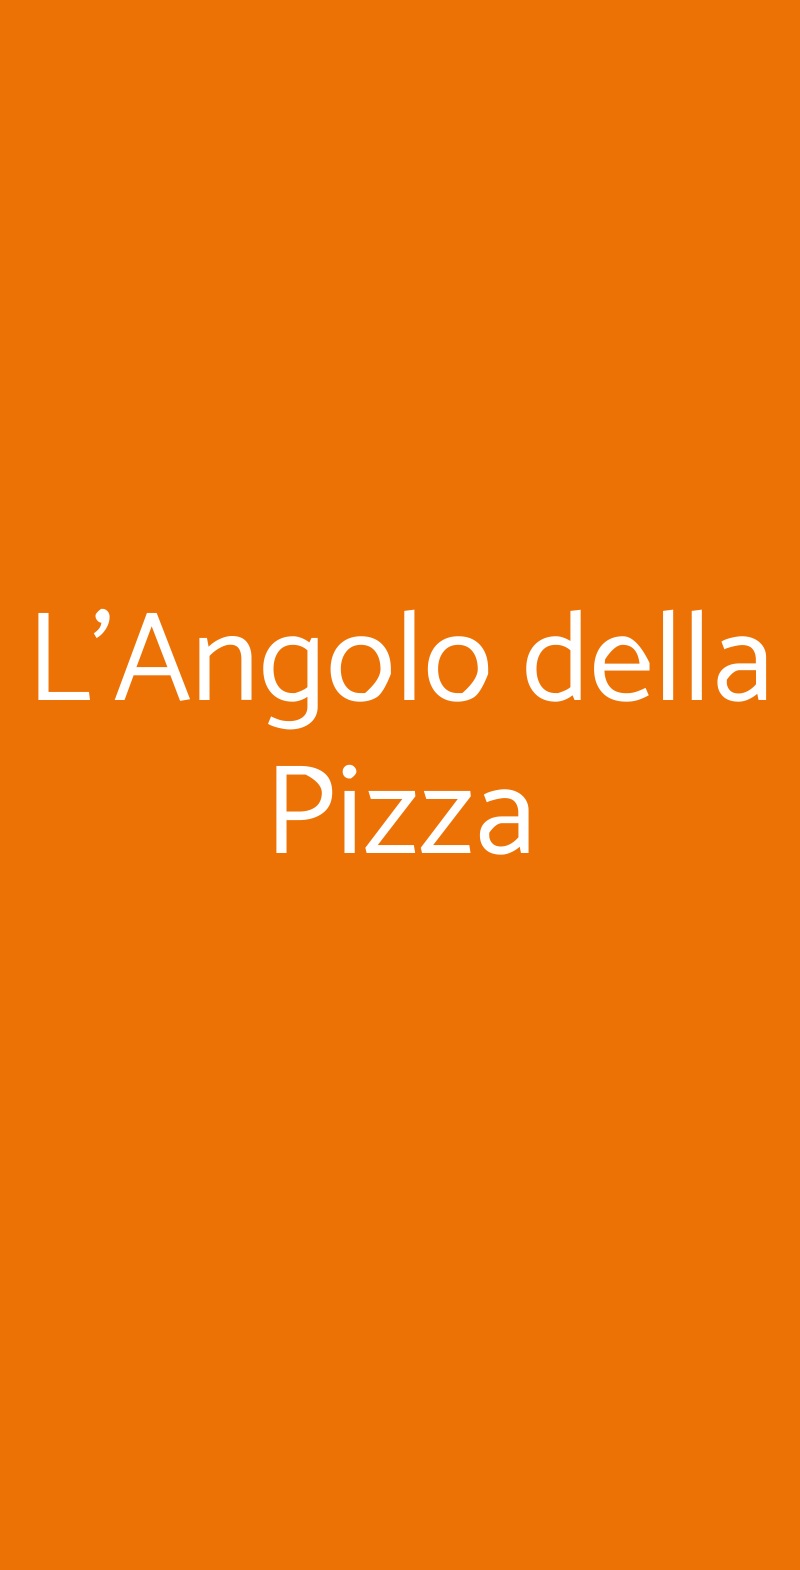 L'Angolo della Pizza Napoli menù 1 pagina